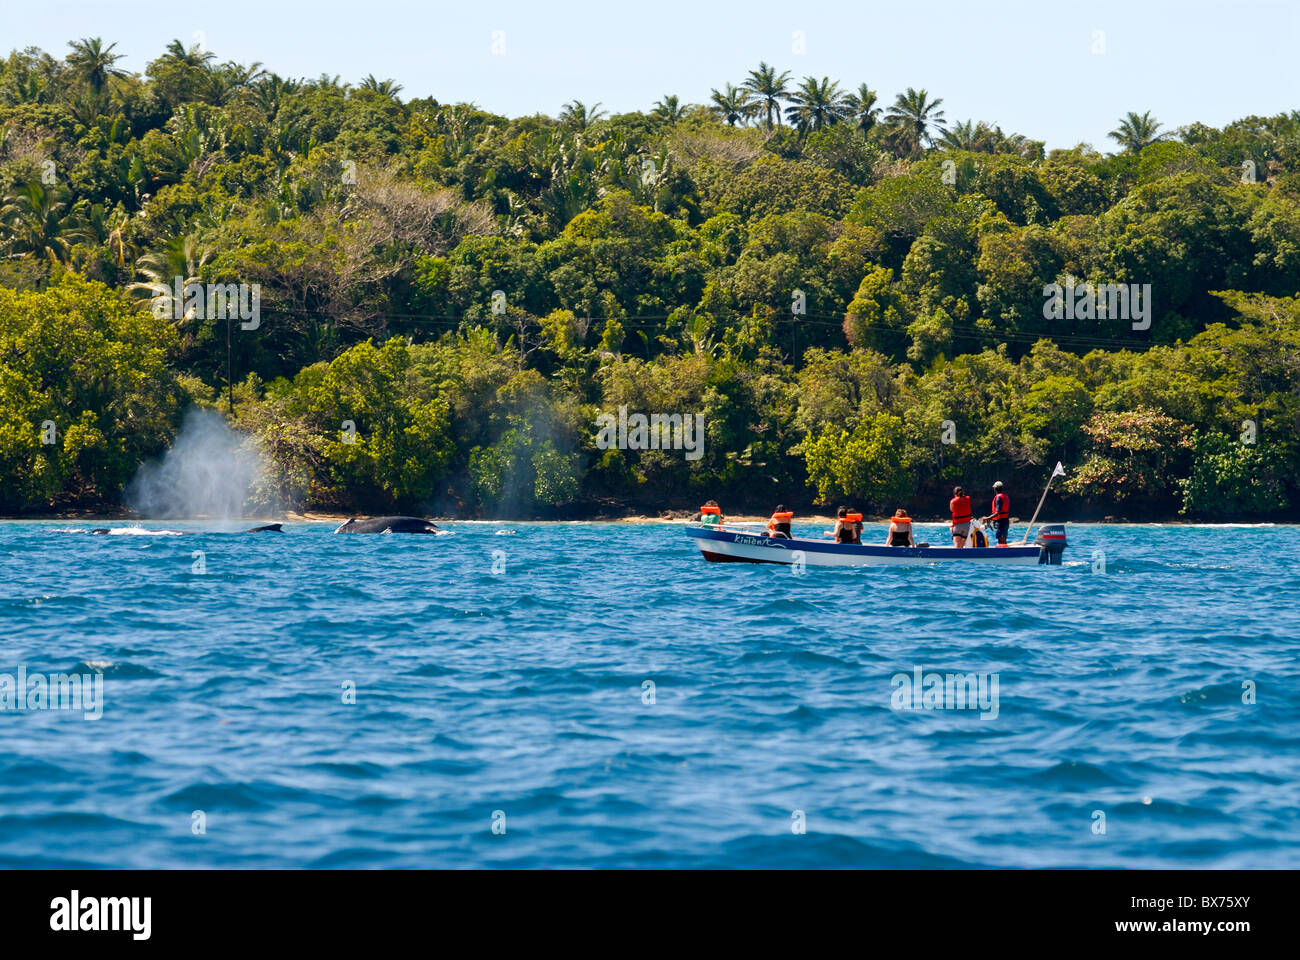 Los turistas viendo una ballena jorobada (Megaptera novaeangliae), Ile Sainte Marie, Madagascar, el Océano Índico, África Foto de stock